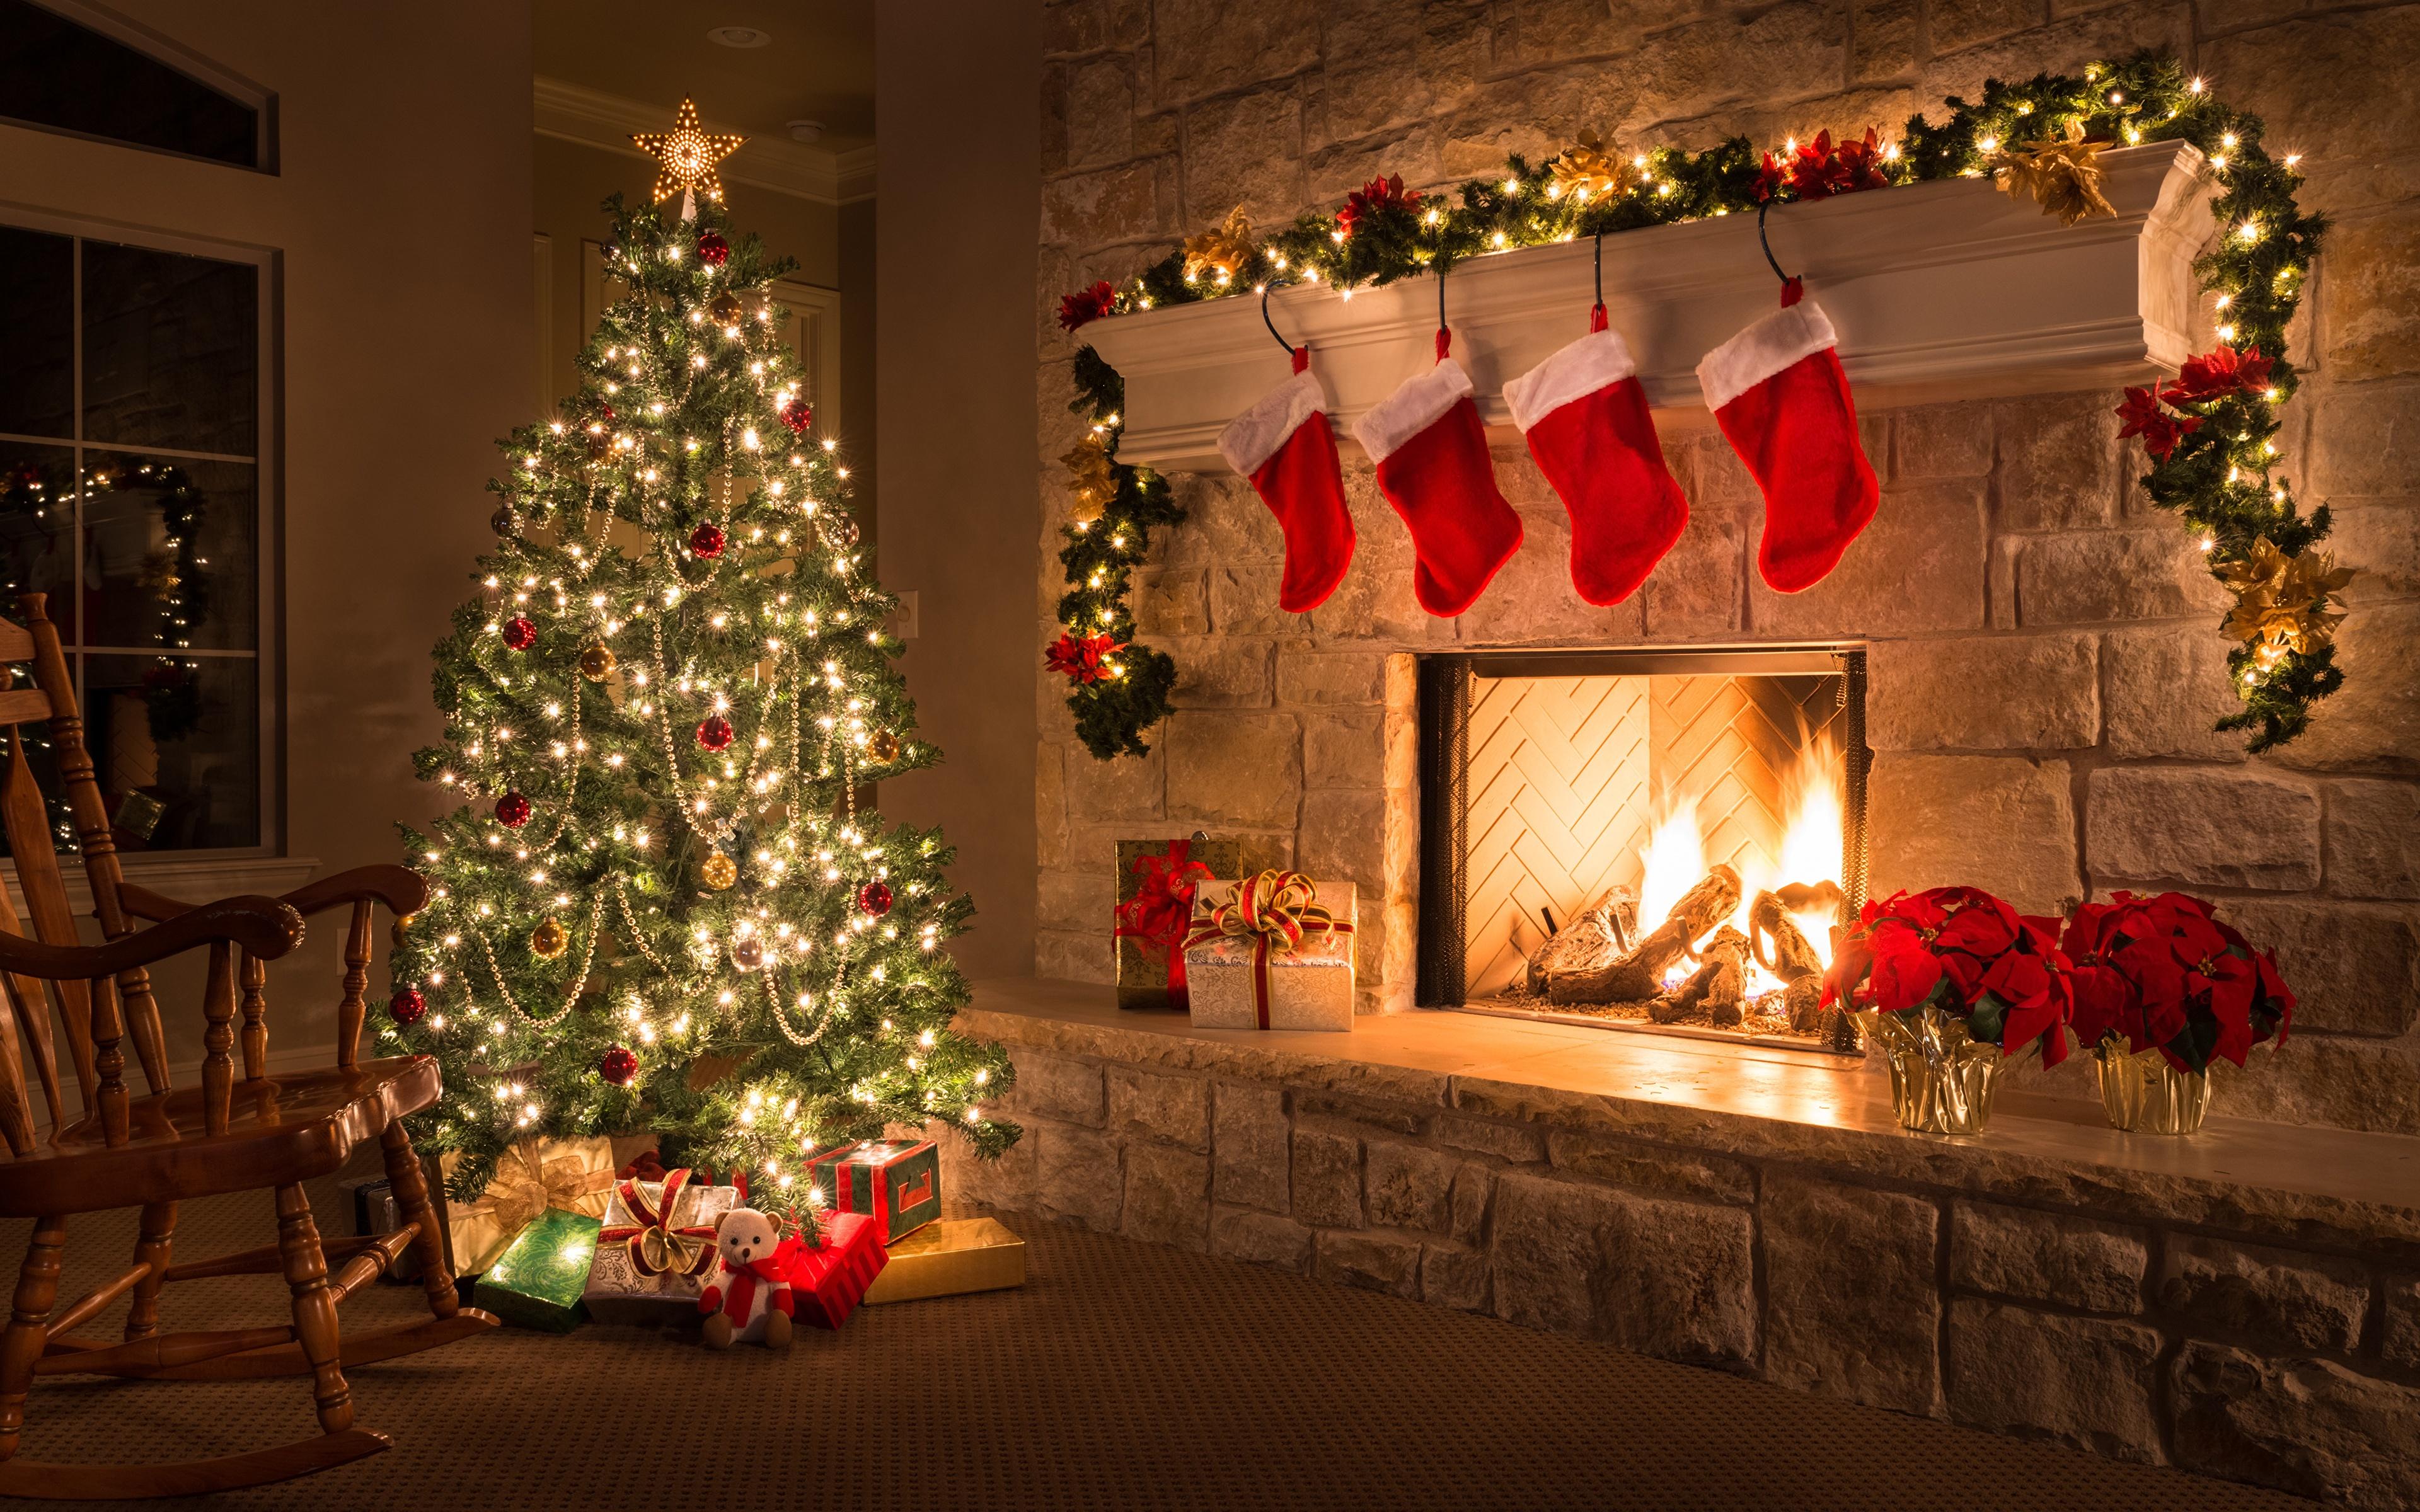 Hình nền Giáng Sinh với cây thông cổ điển sẽ khiến ngôi nhà của bạn sáng lên trong niềm vui của mùa lễ hội. Hãy khám phá những hình ảnh đẹp mắt nhất để tạo cảm giác ấm áp và đón mừng mùa Giáng Sinh!